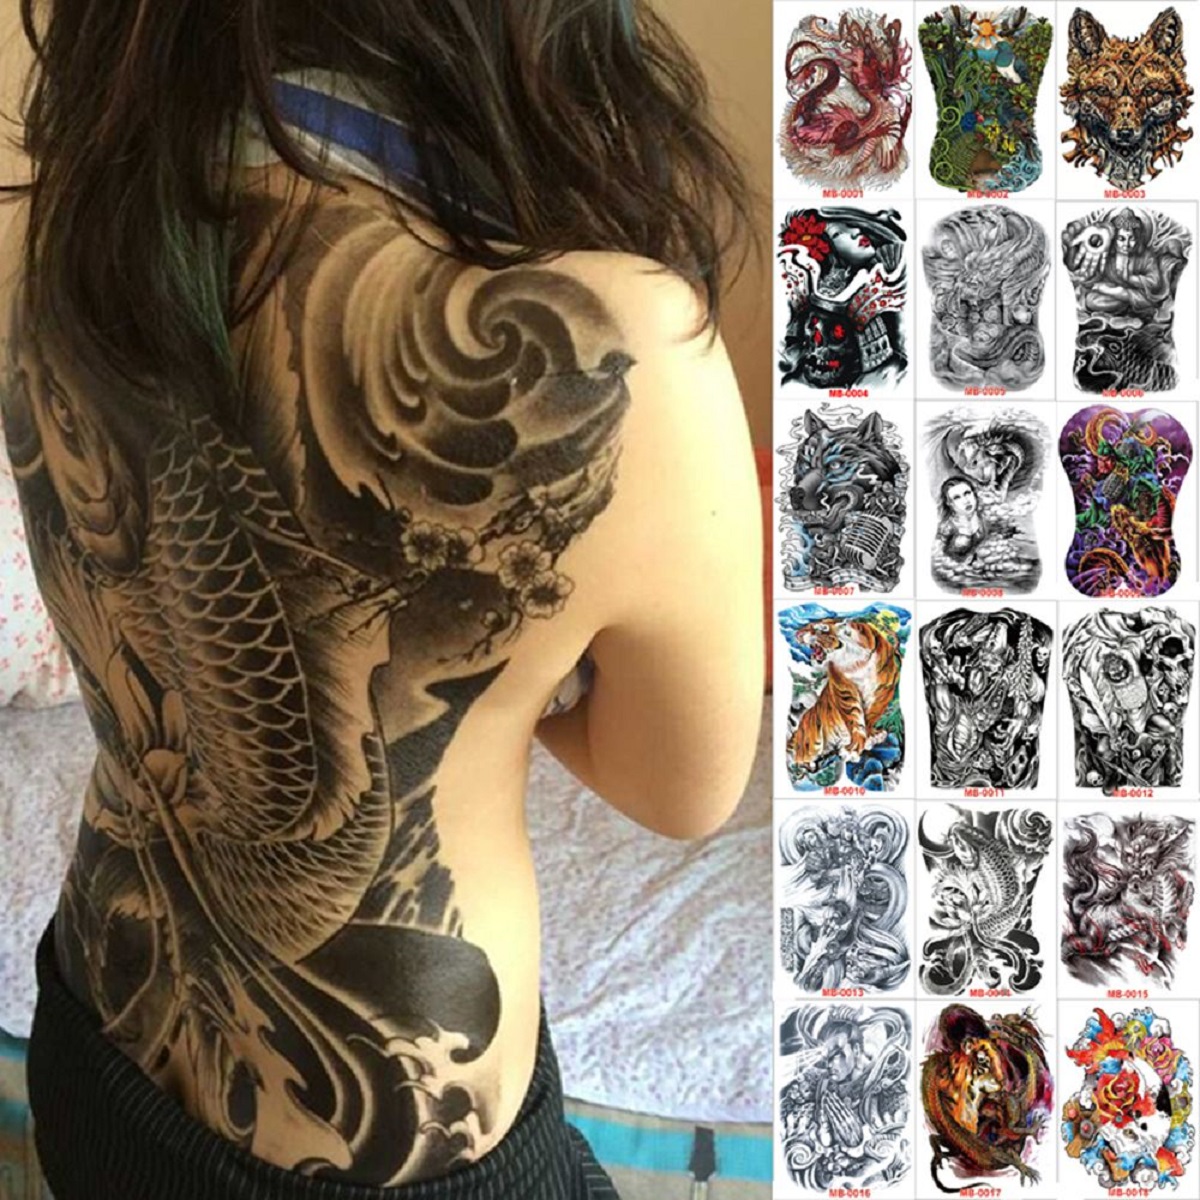 Tattoo gia cát lượng - Xăm Hình Nghệ Thuật | Facebook